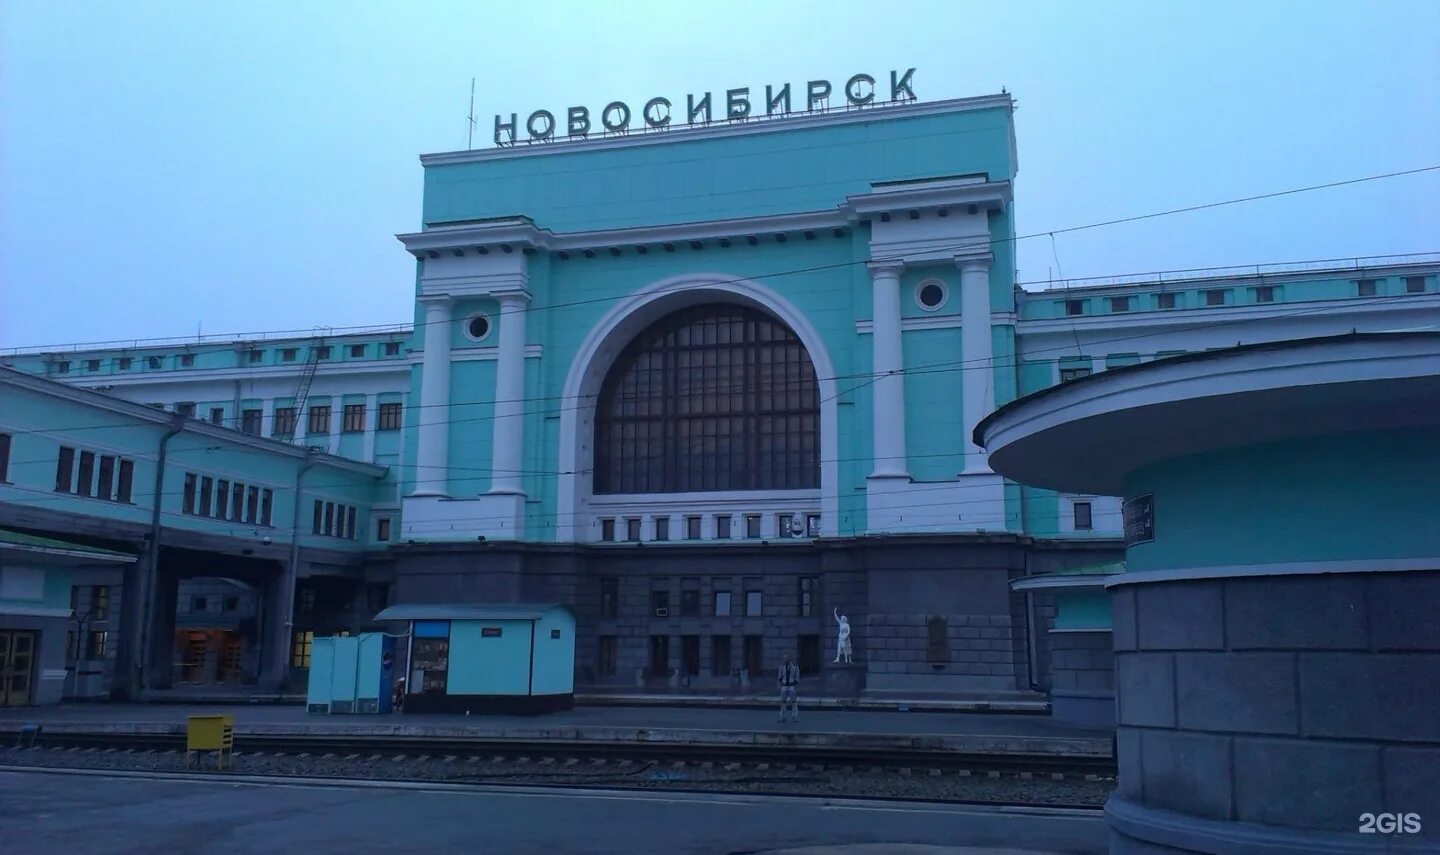 Сайт вокзала новосибирск. Ж/Д вокзал Новосибирск. Станция Новосибирск-главный, Новосибирск. ЖД вокзал Новосибирск главный. Г Новосибирск ЖД вокзал главный.